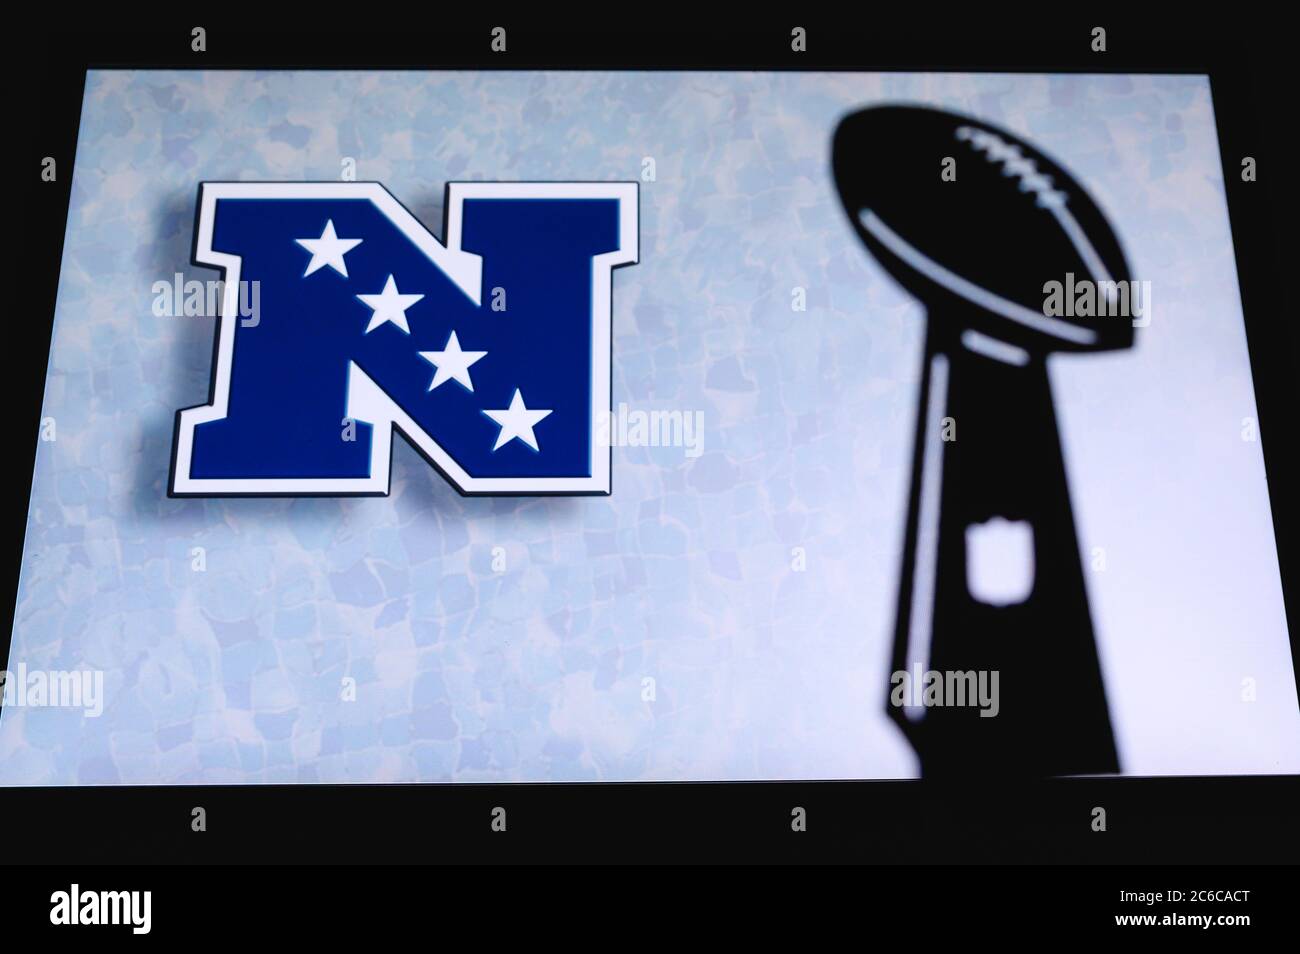 Conférence nationale de football – NFC, club de football américain professionnel, silhouette du trophée NFL, logo du club en arrière-plan. Banque D'Images